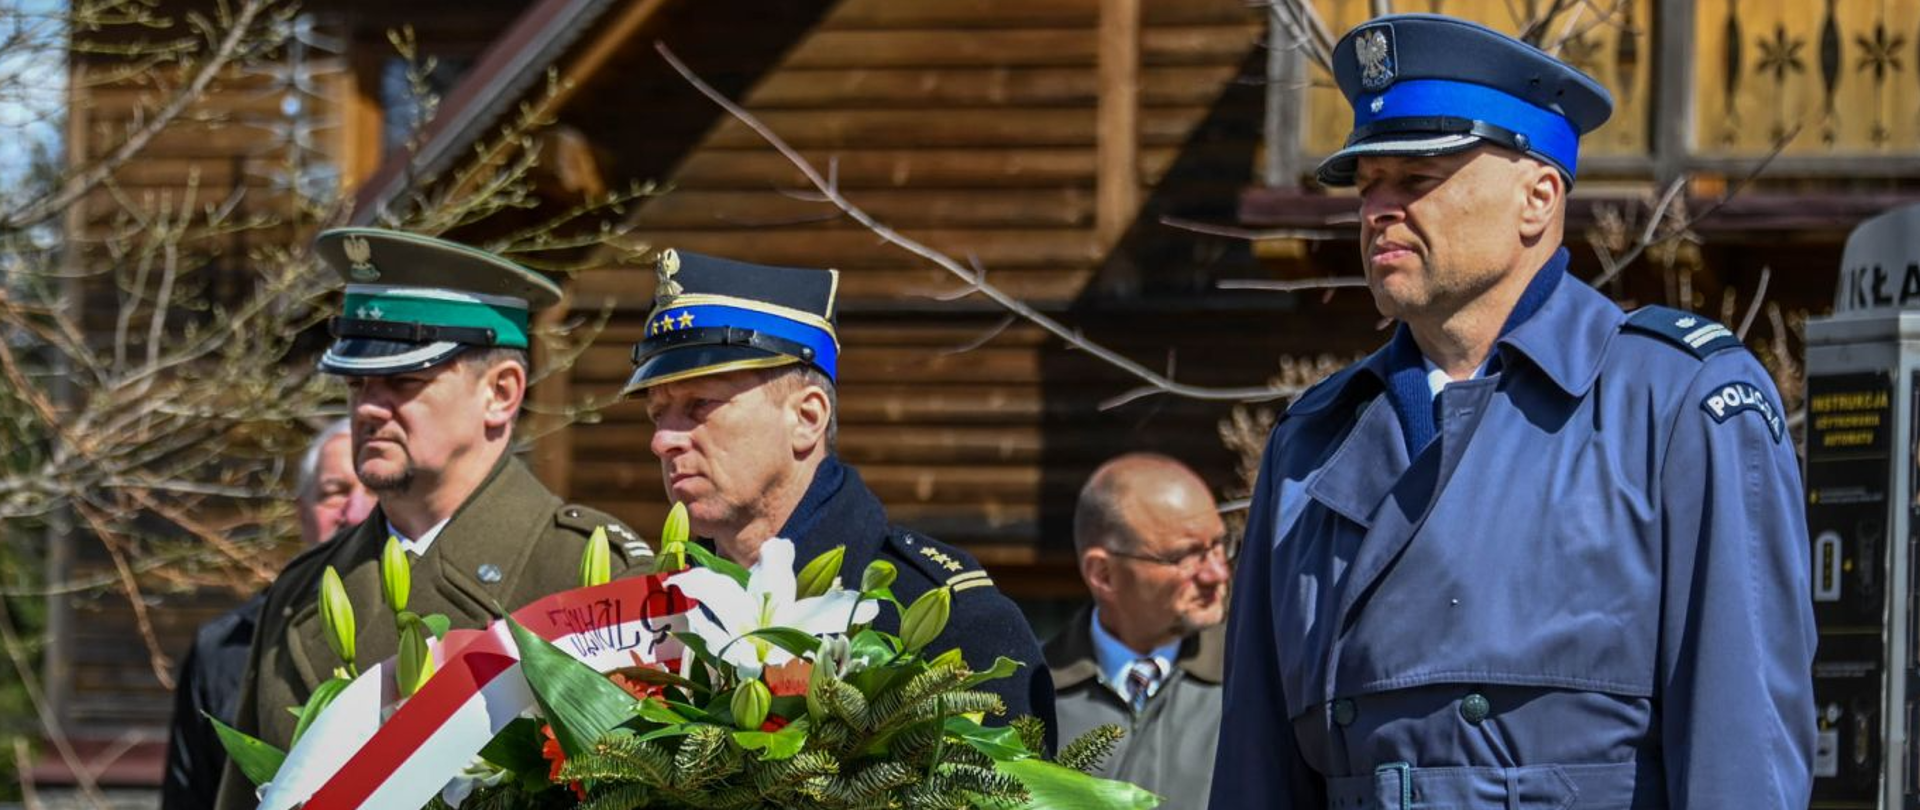 st. bryg. Grzegorz Worwa Komendant Powiatowy Państwowej Straży Pożarnej w Zakopanem składający kwiaty pod pomnikiem "Golgota Wschodu"